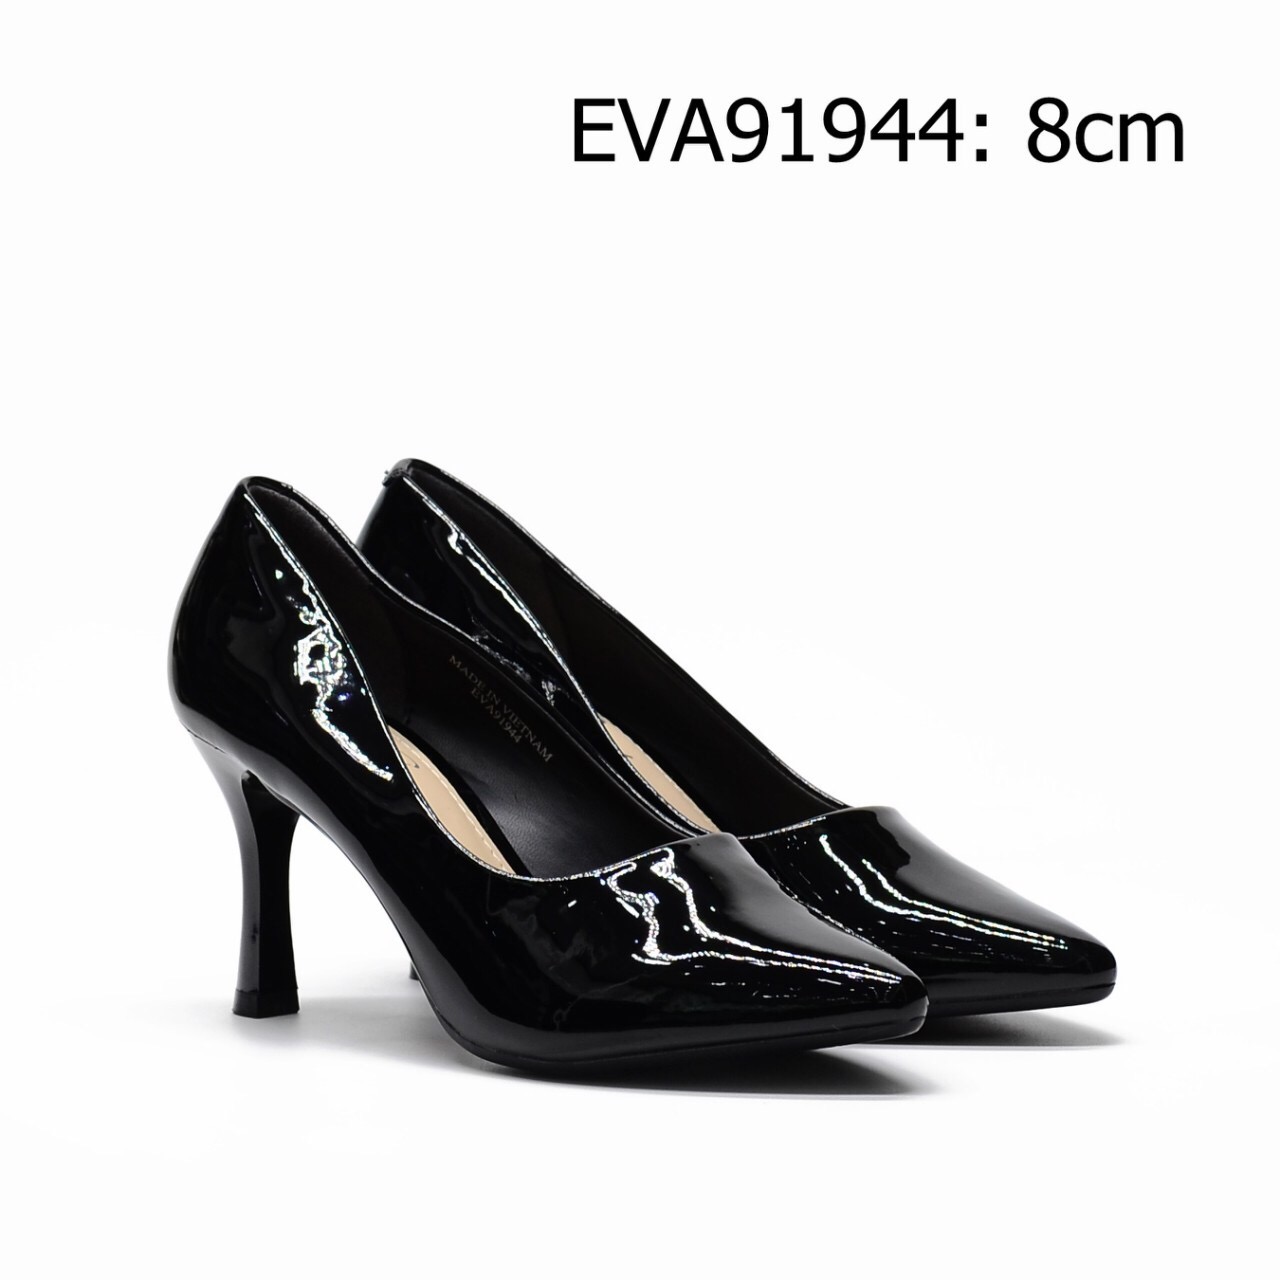 Giày bít mũi EVA91944 cao 8cm thiết kế da bóng trẻ trung, quý phái